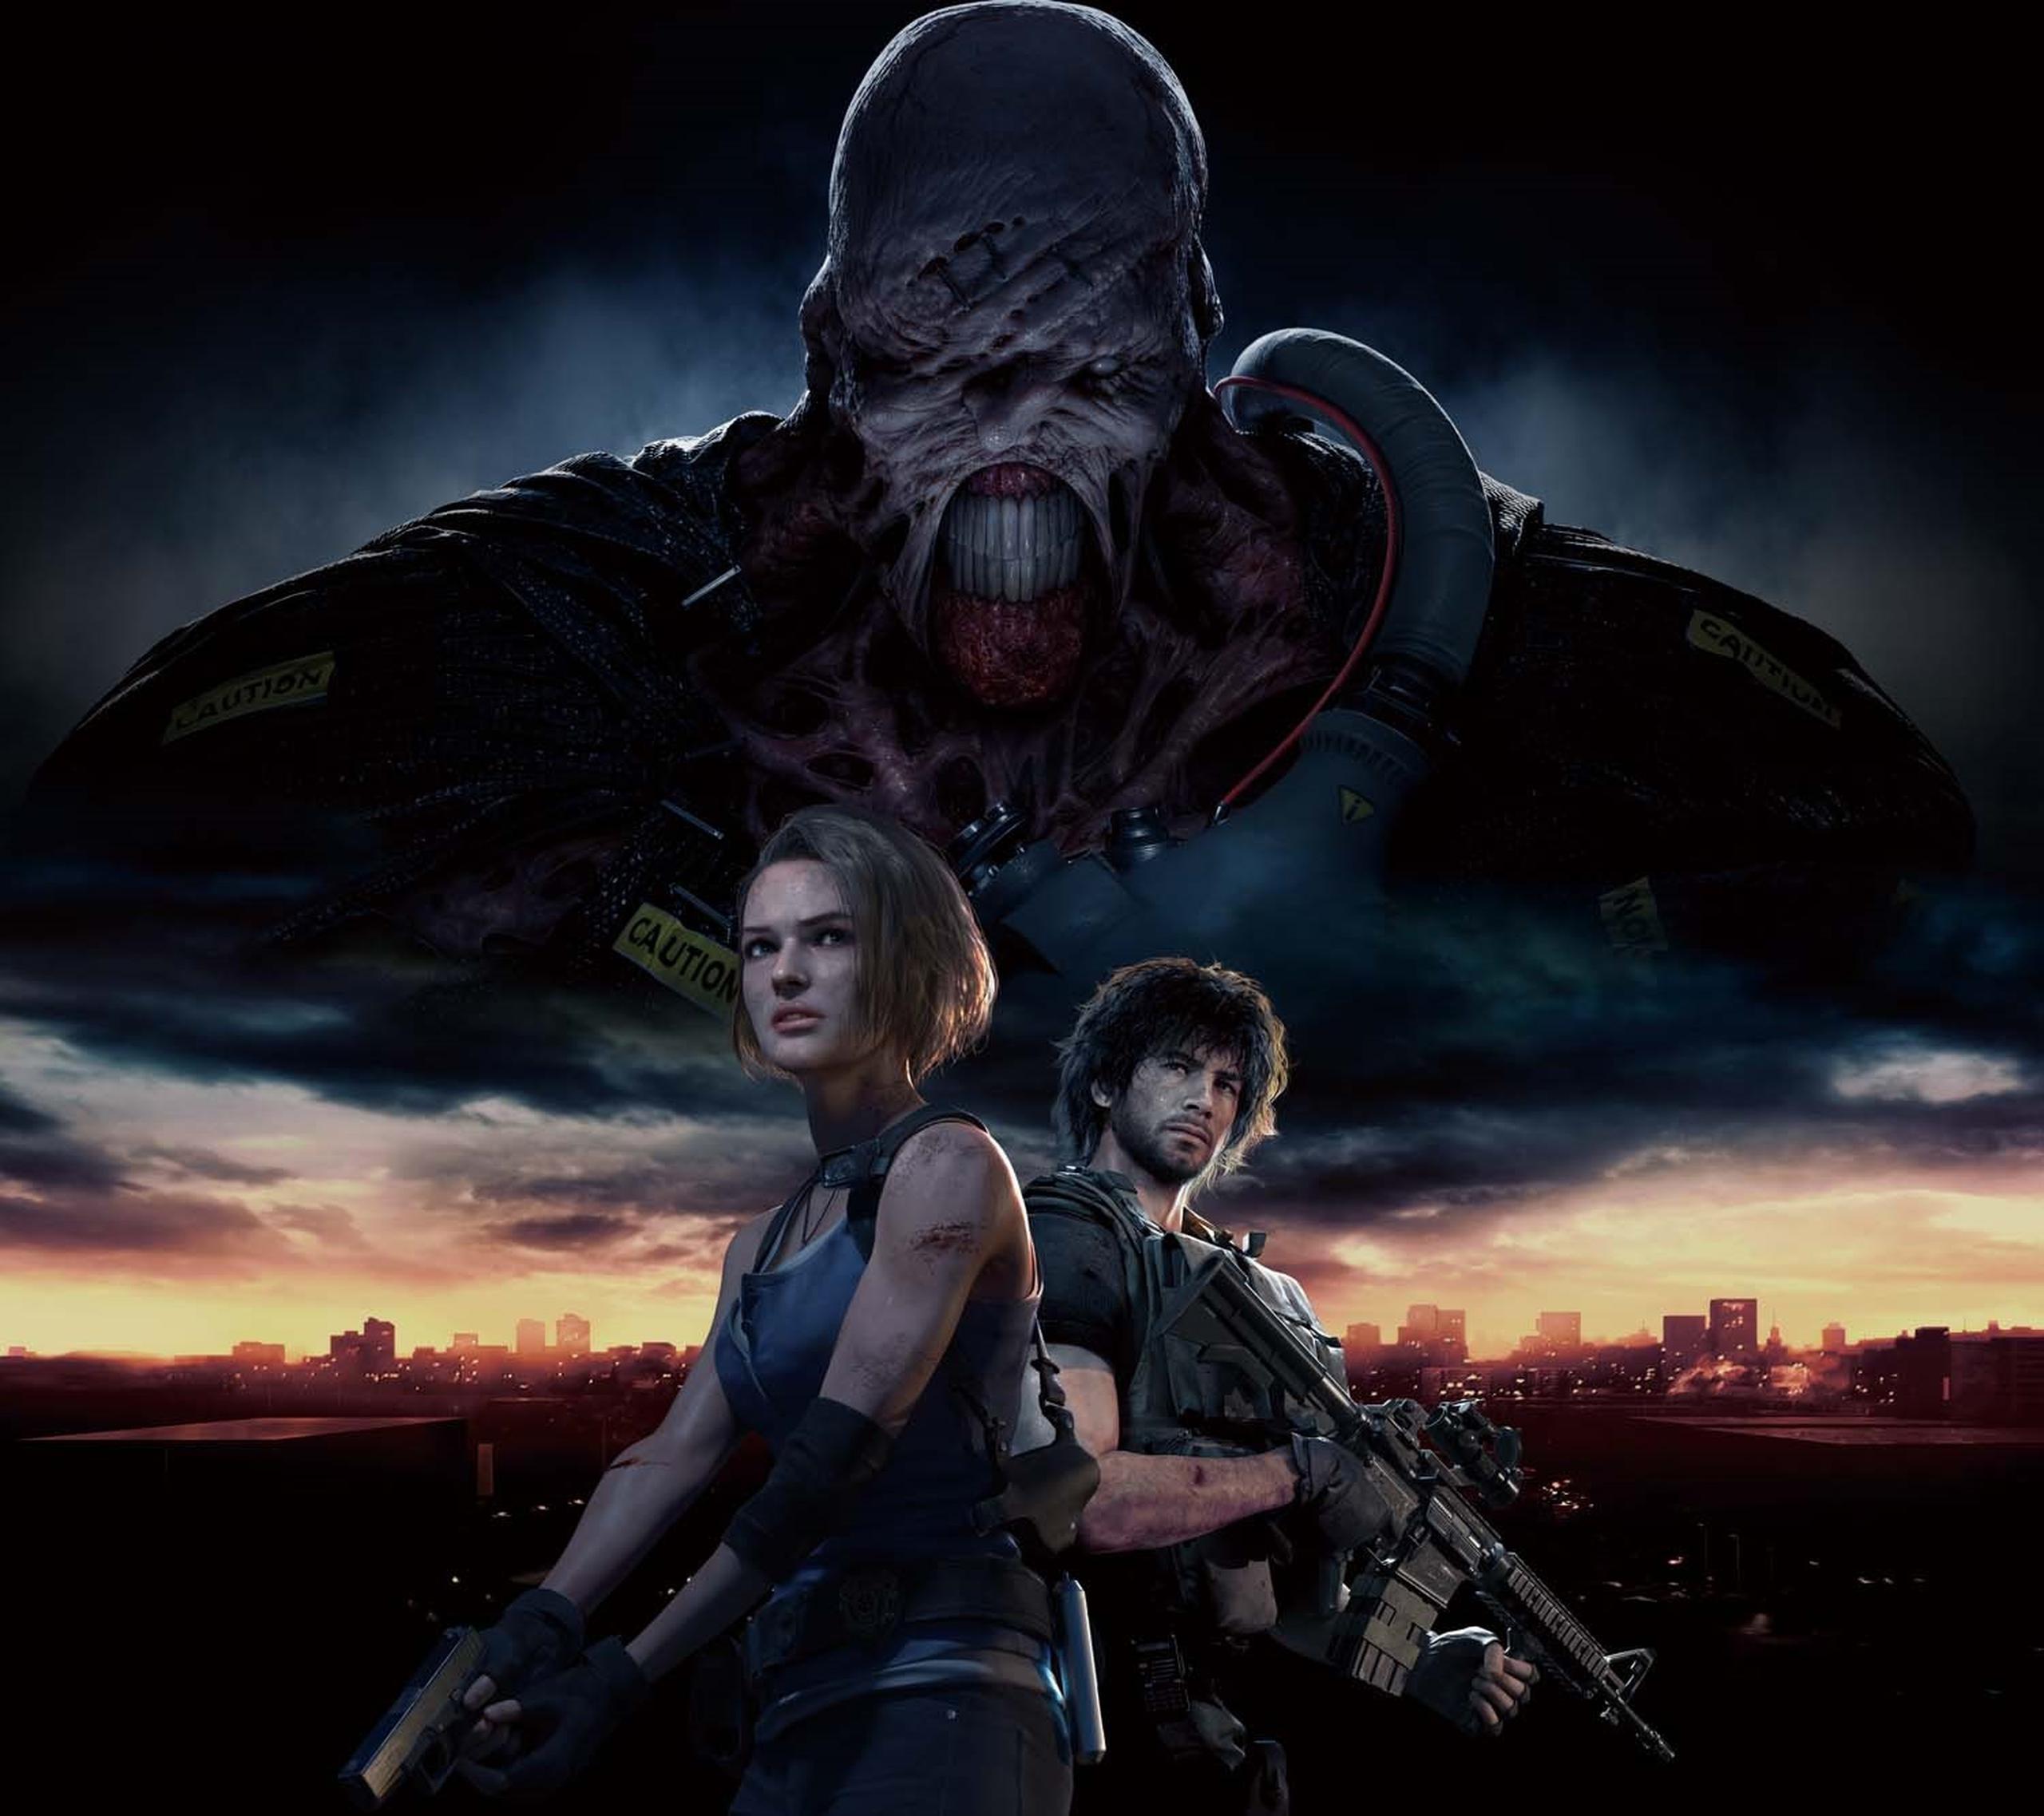 El clásico de supervivencia "Resident Evil 3" llega con gráficas y ambientación renovadas.